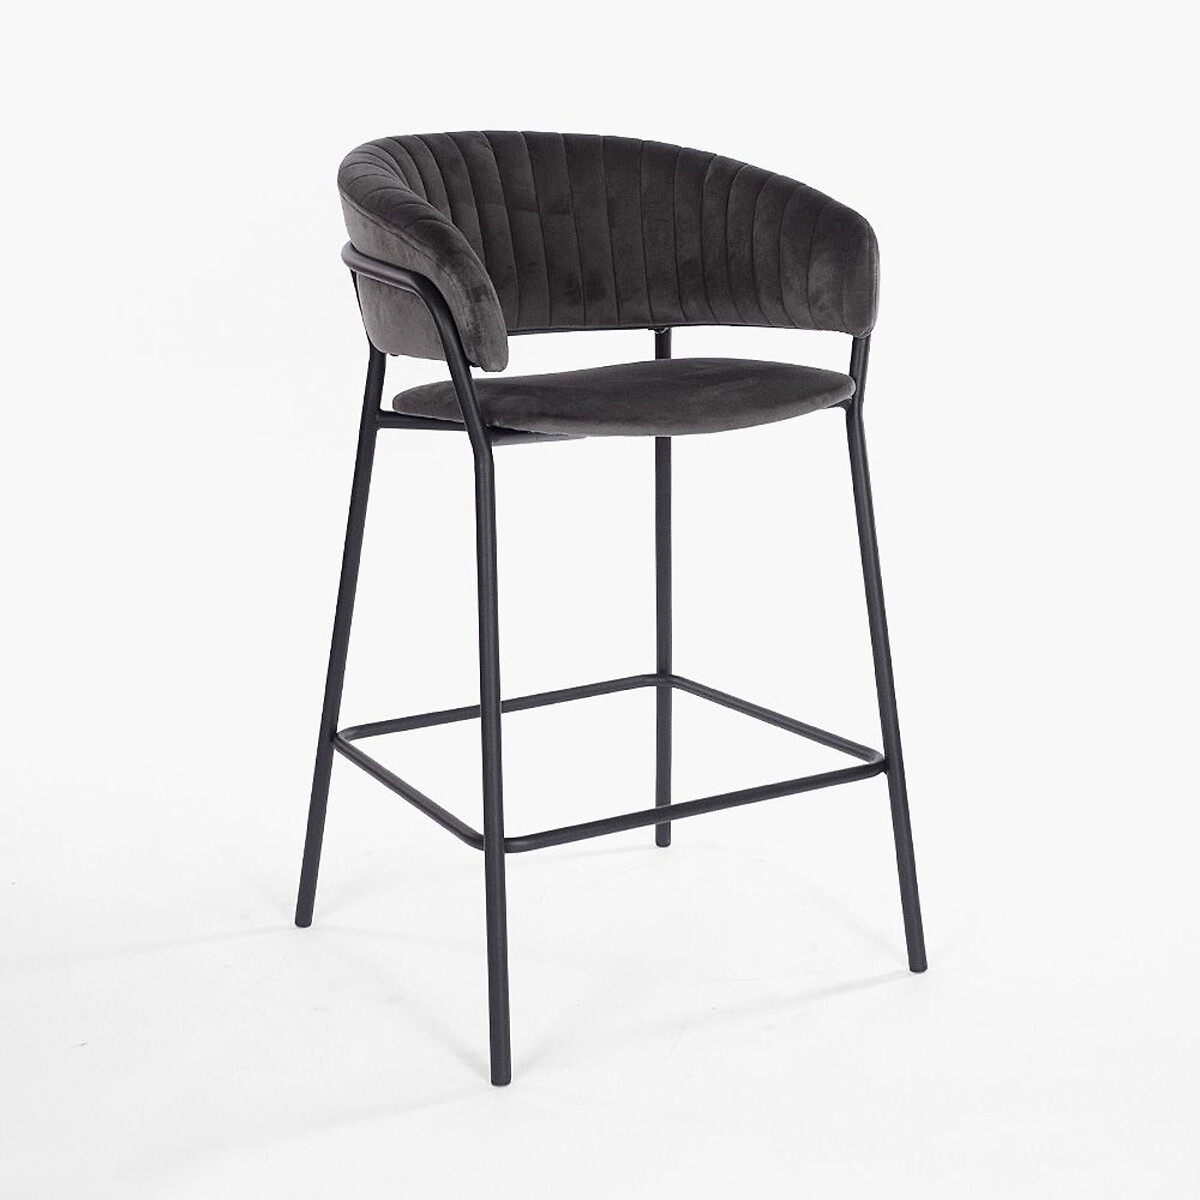 Стул полубарный Пиза единый размер серый стул полубарный техас 360х360х640мм оливковый ткань